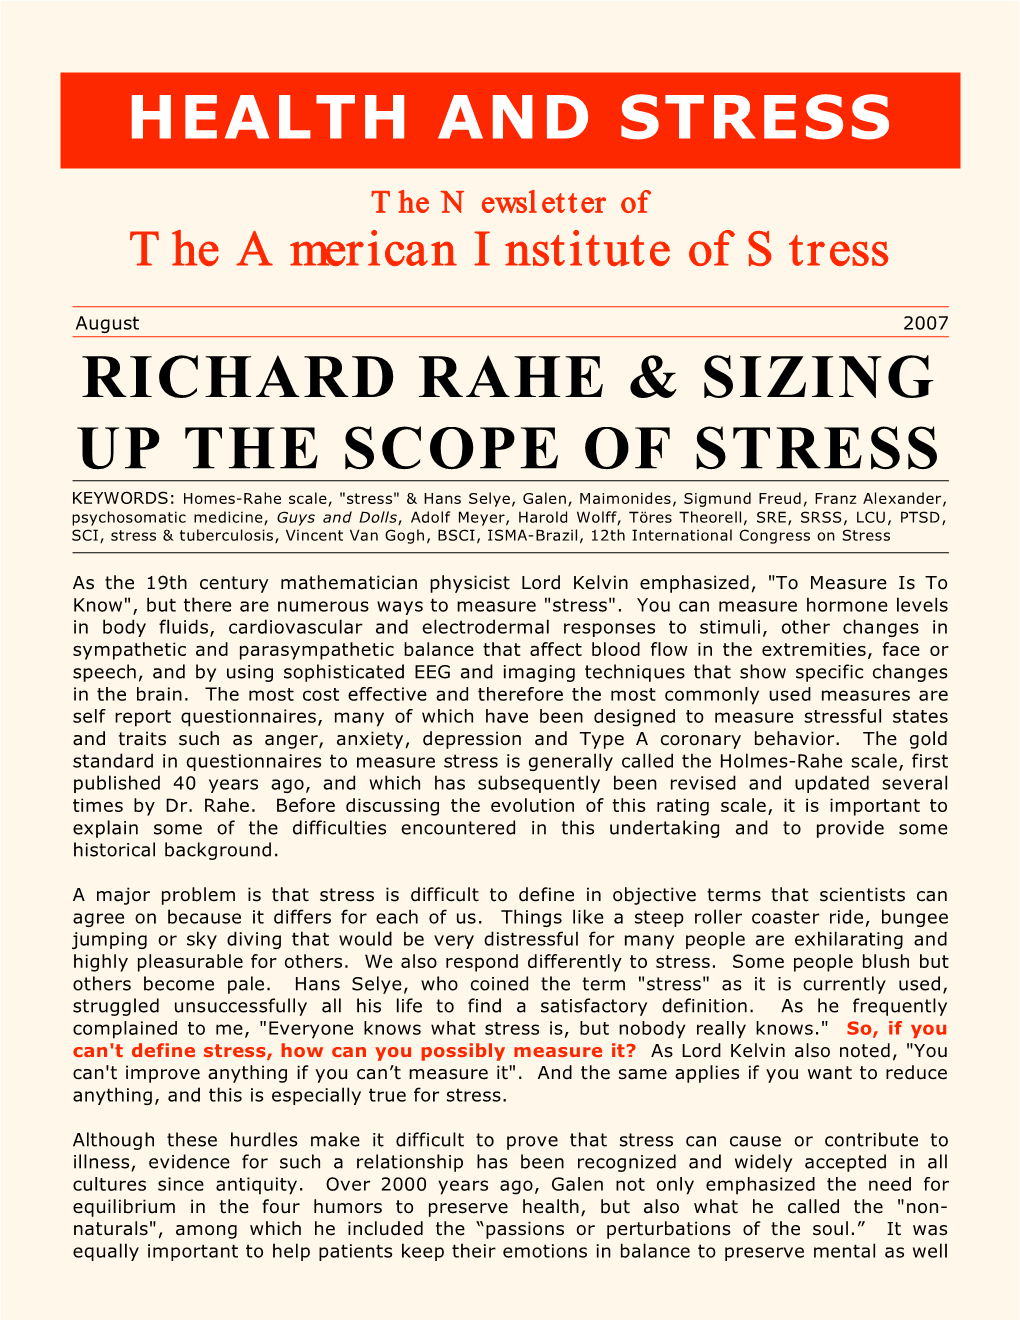 Richard Rahe & Sizing up the Scope of Stress